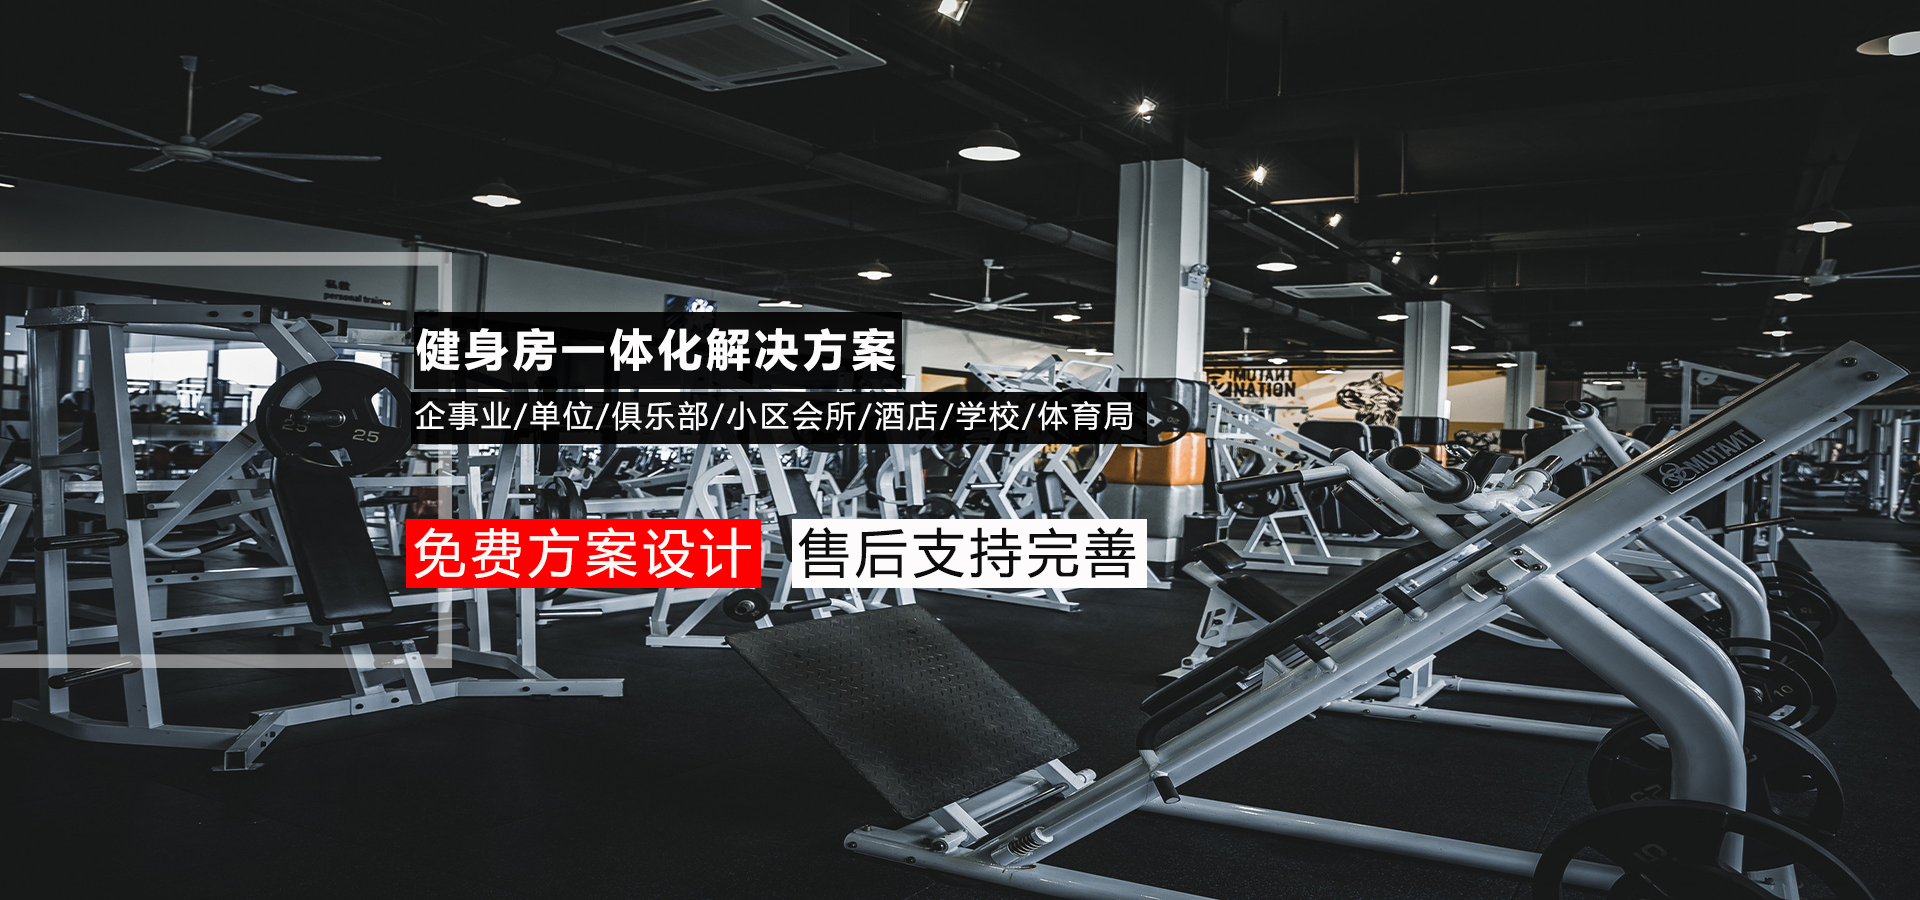 贵州体育器材厂家